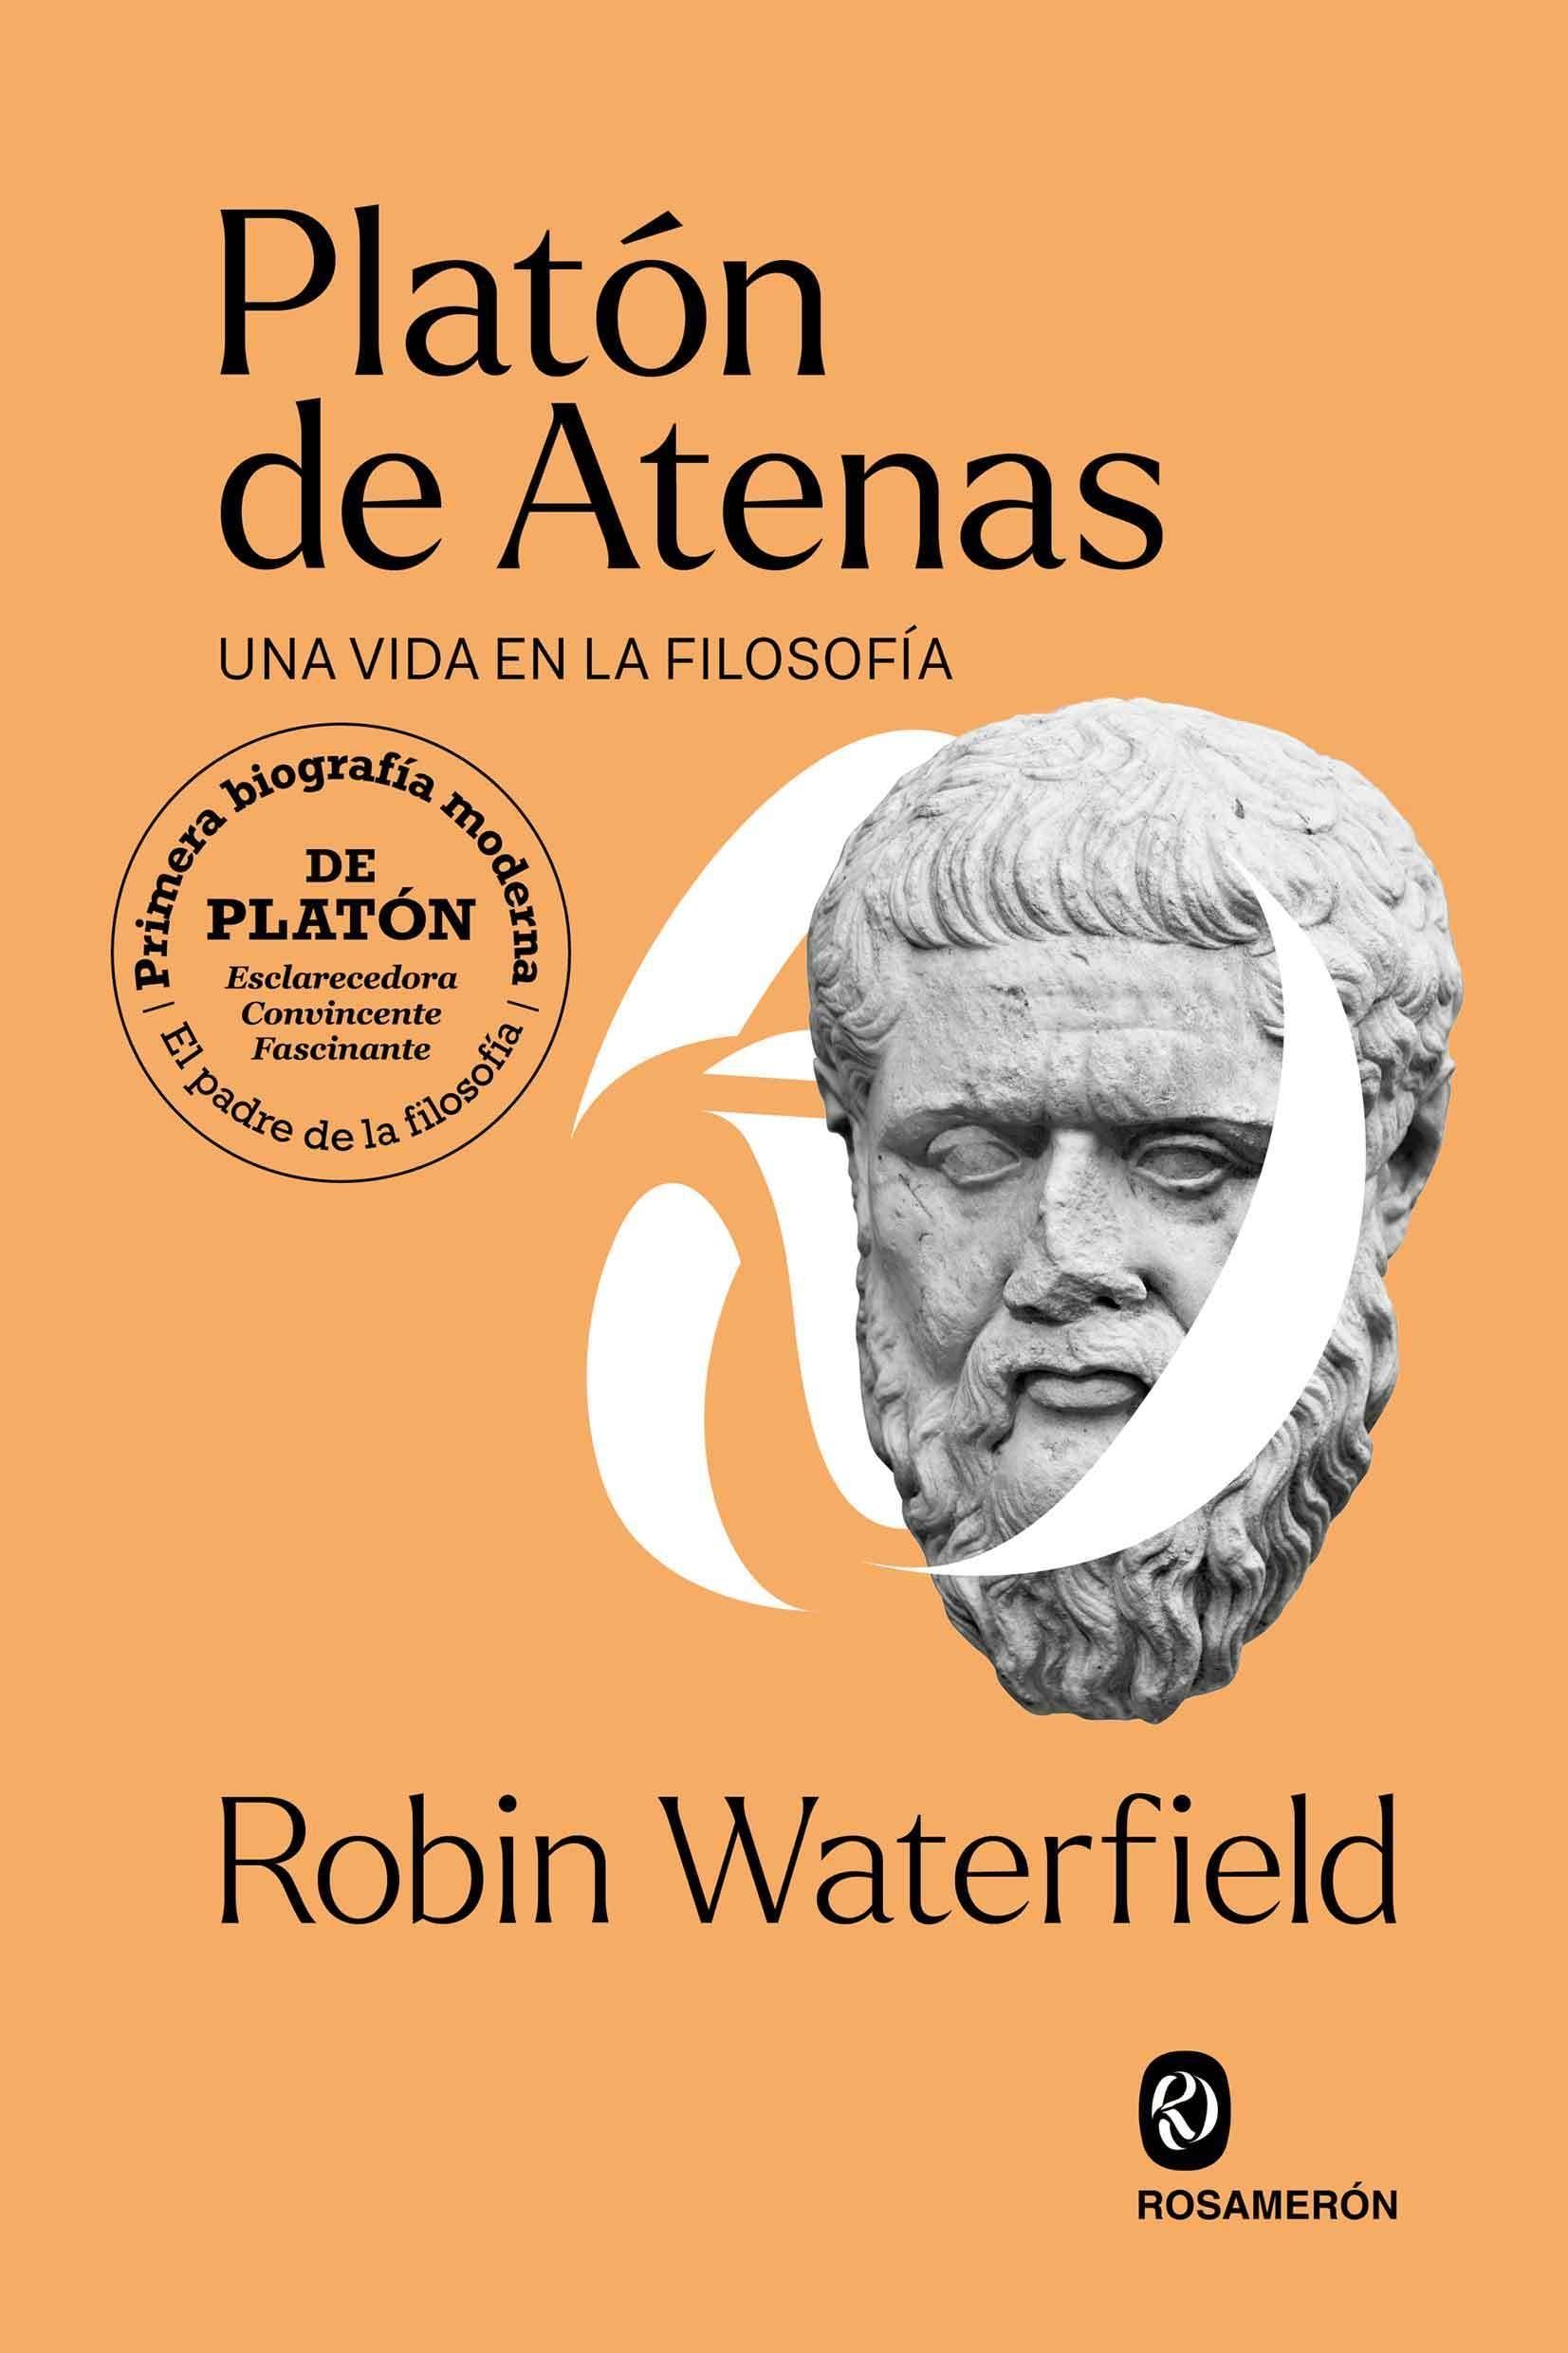 PLATON DE ATENAS "UNA VIDA EN LA FILOSOFIA"